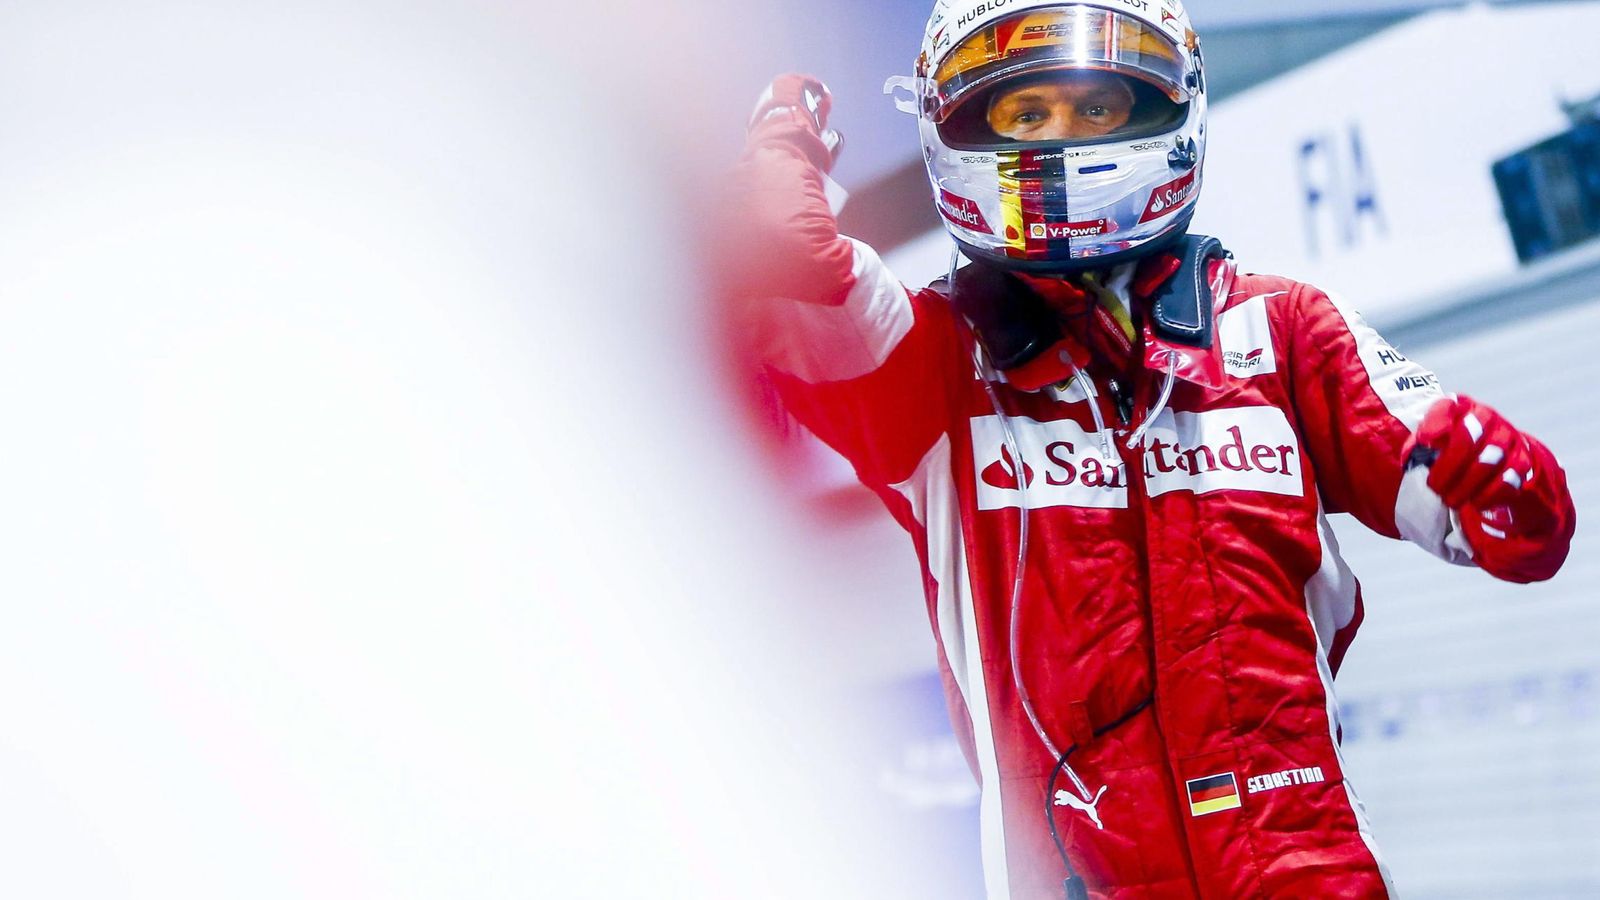 Foto: Sebastian Vettel tras bajarse de su monoplaza en Singapur, hace un año.